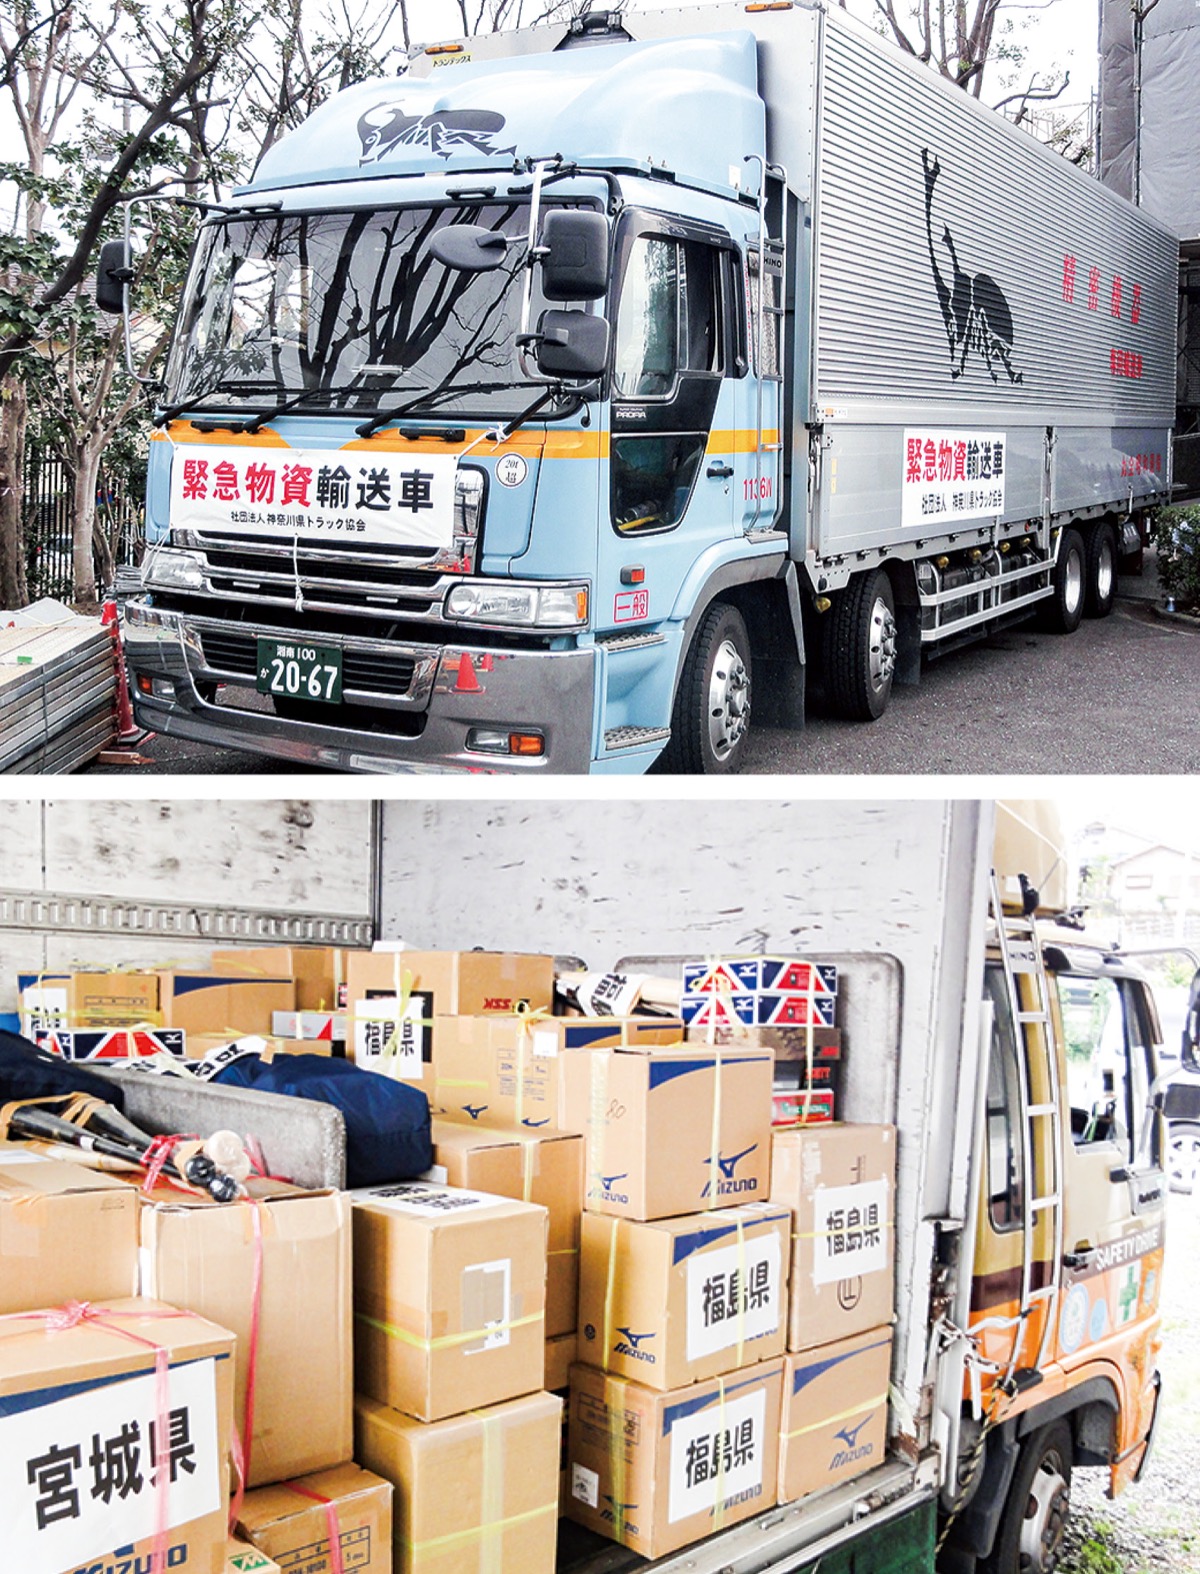 有事の際、地域の役に｣ 神奈川県トラック協会 | 港北区 | タウンニュース